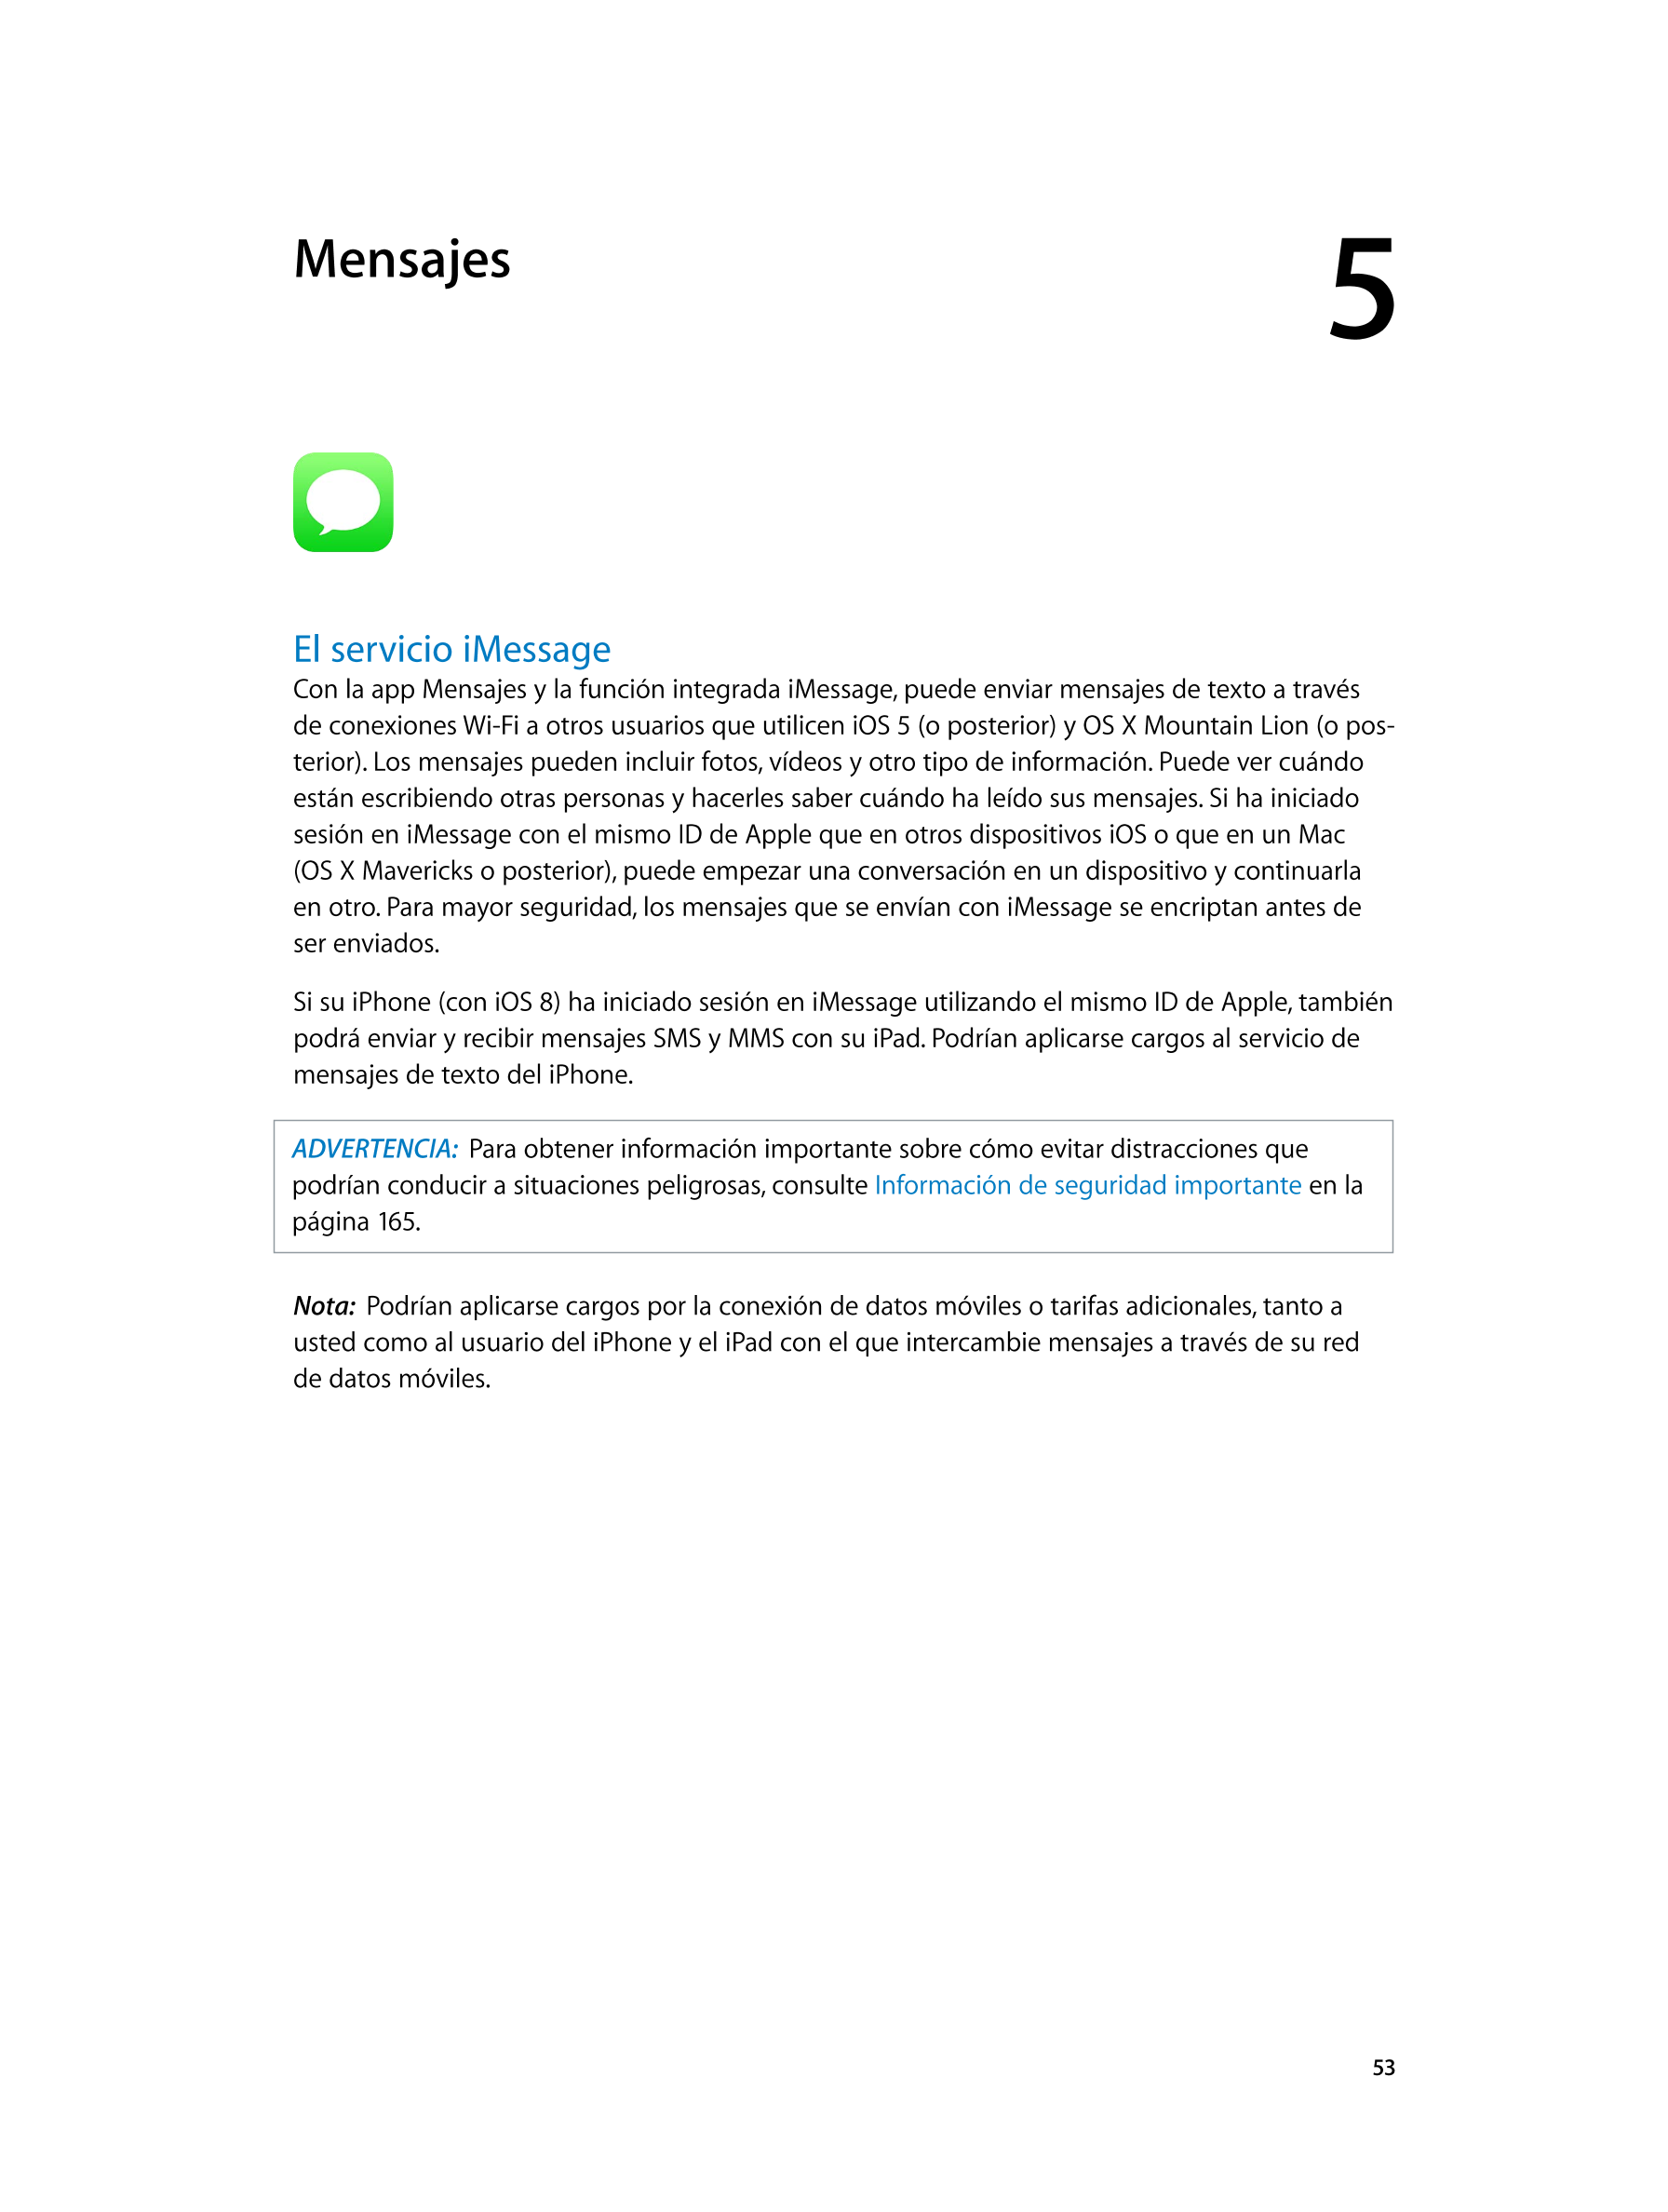  Mensajes 5  
El servicio iMessage
Con la app Mensajes y la función integrada iMessage, puede enviar mensajes de texto a través 